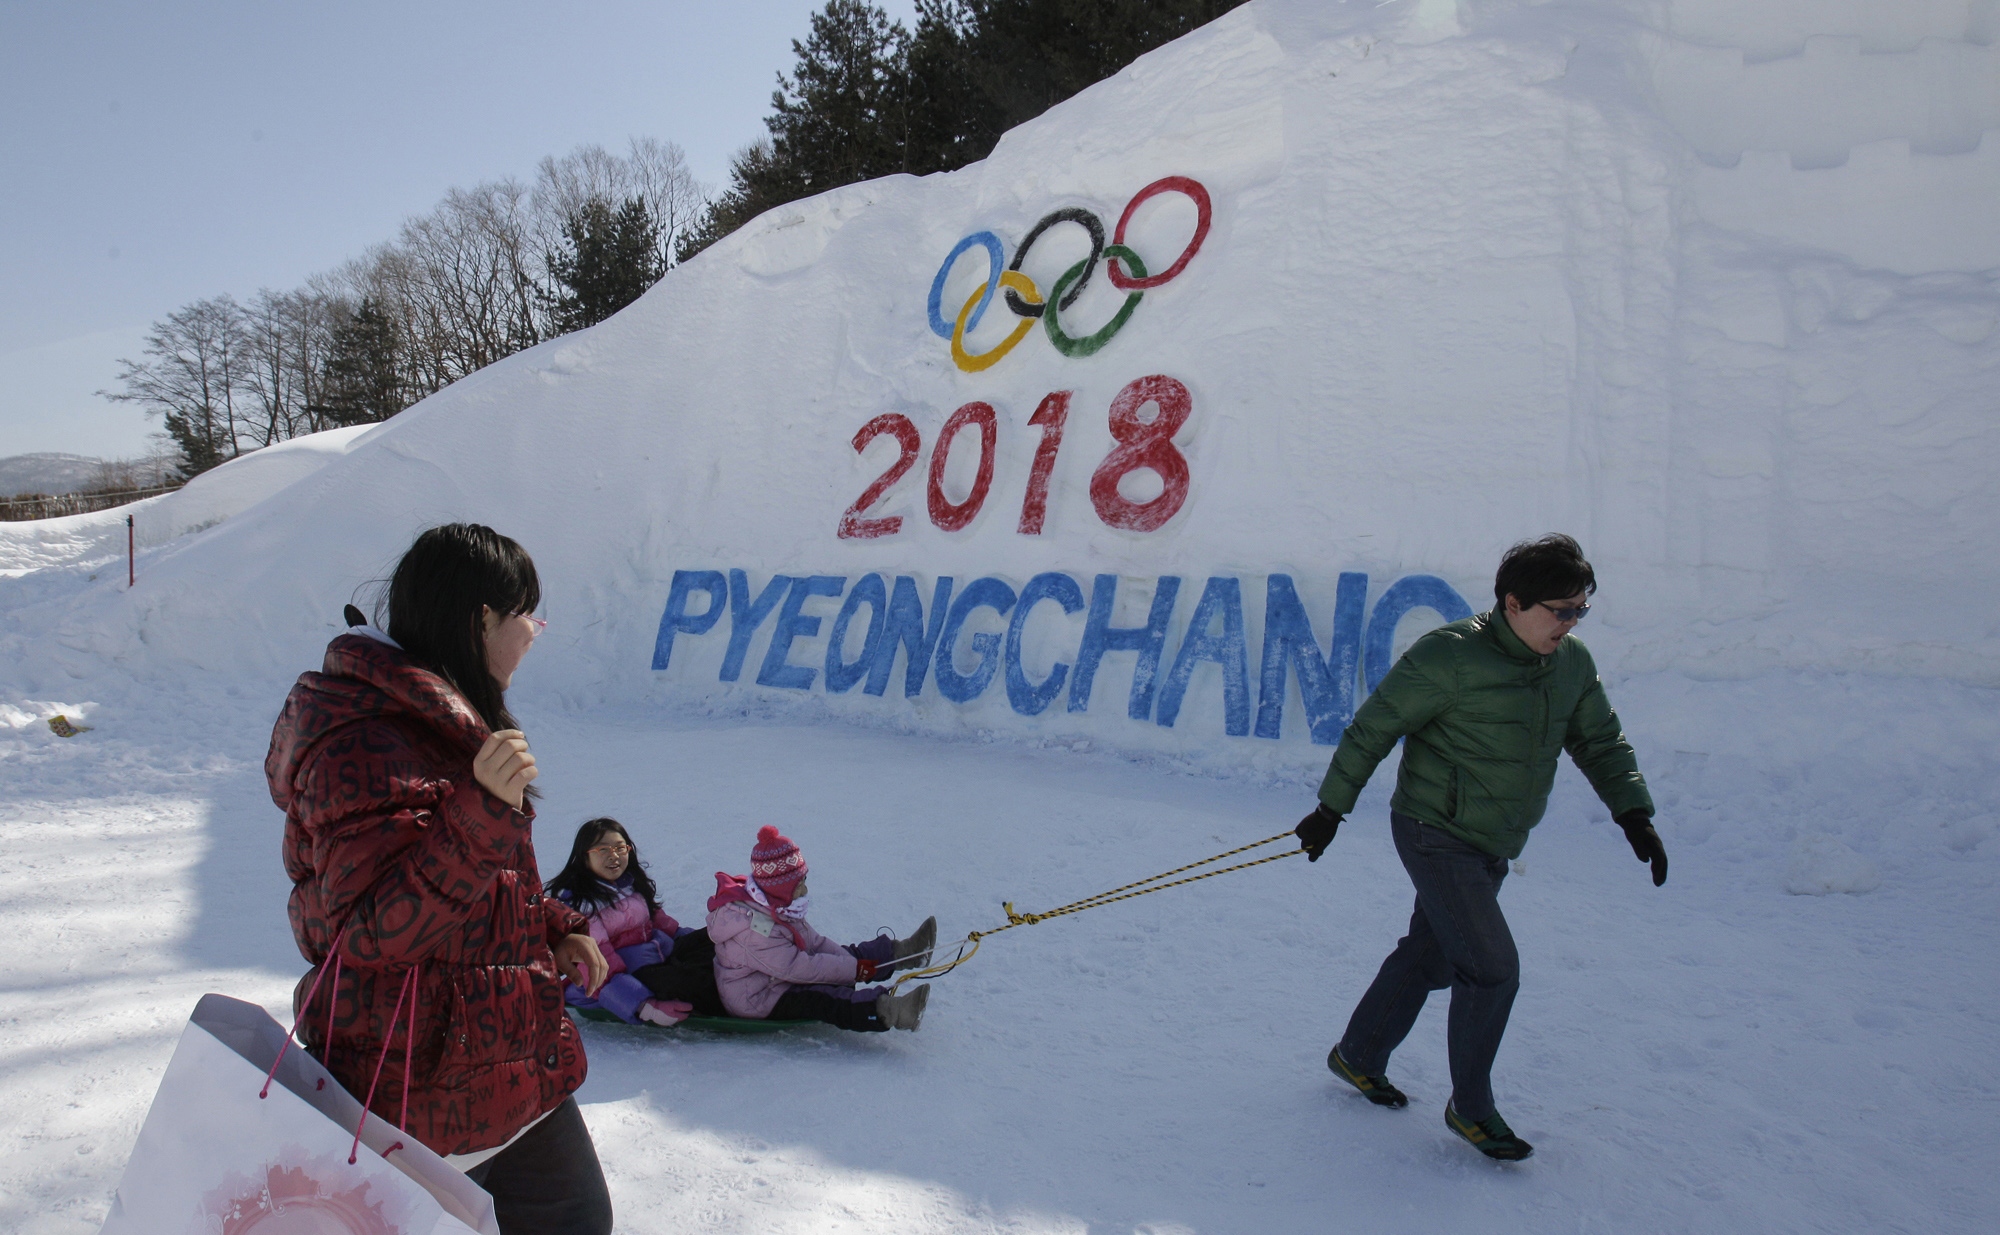 Las instalaciones deportivas para la fiesta atletica de Pyeongchang 2018 están 90% listas, esto de acuerdo con el Comité Olímpico Internacional luego de una inspección